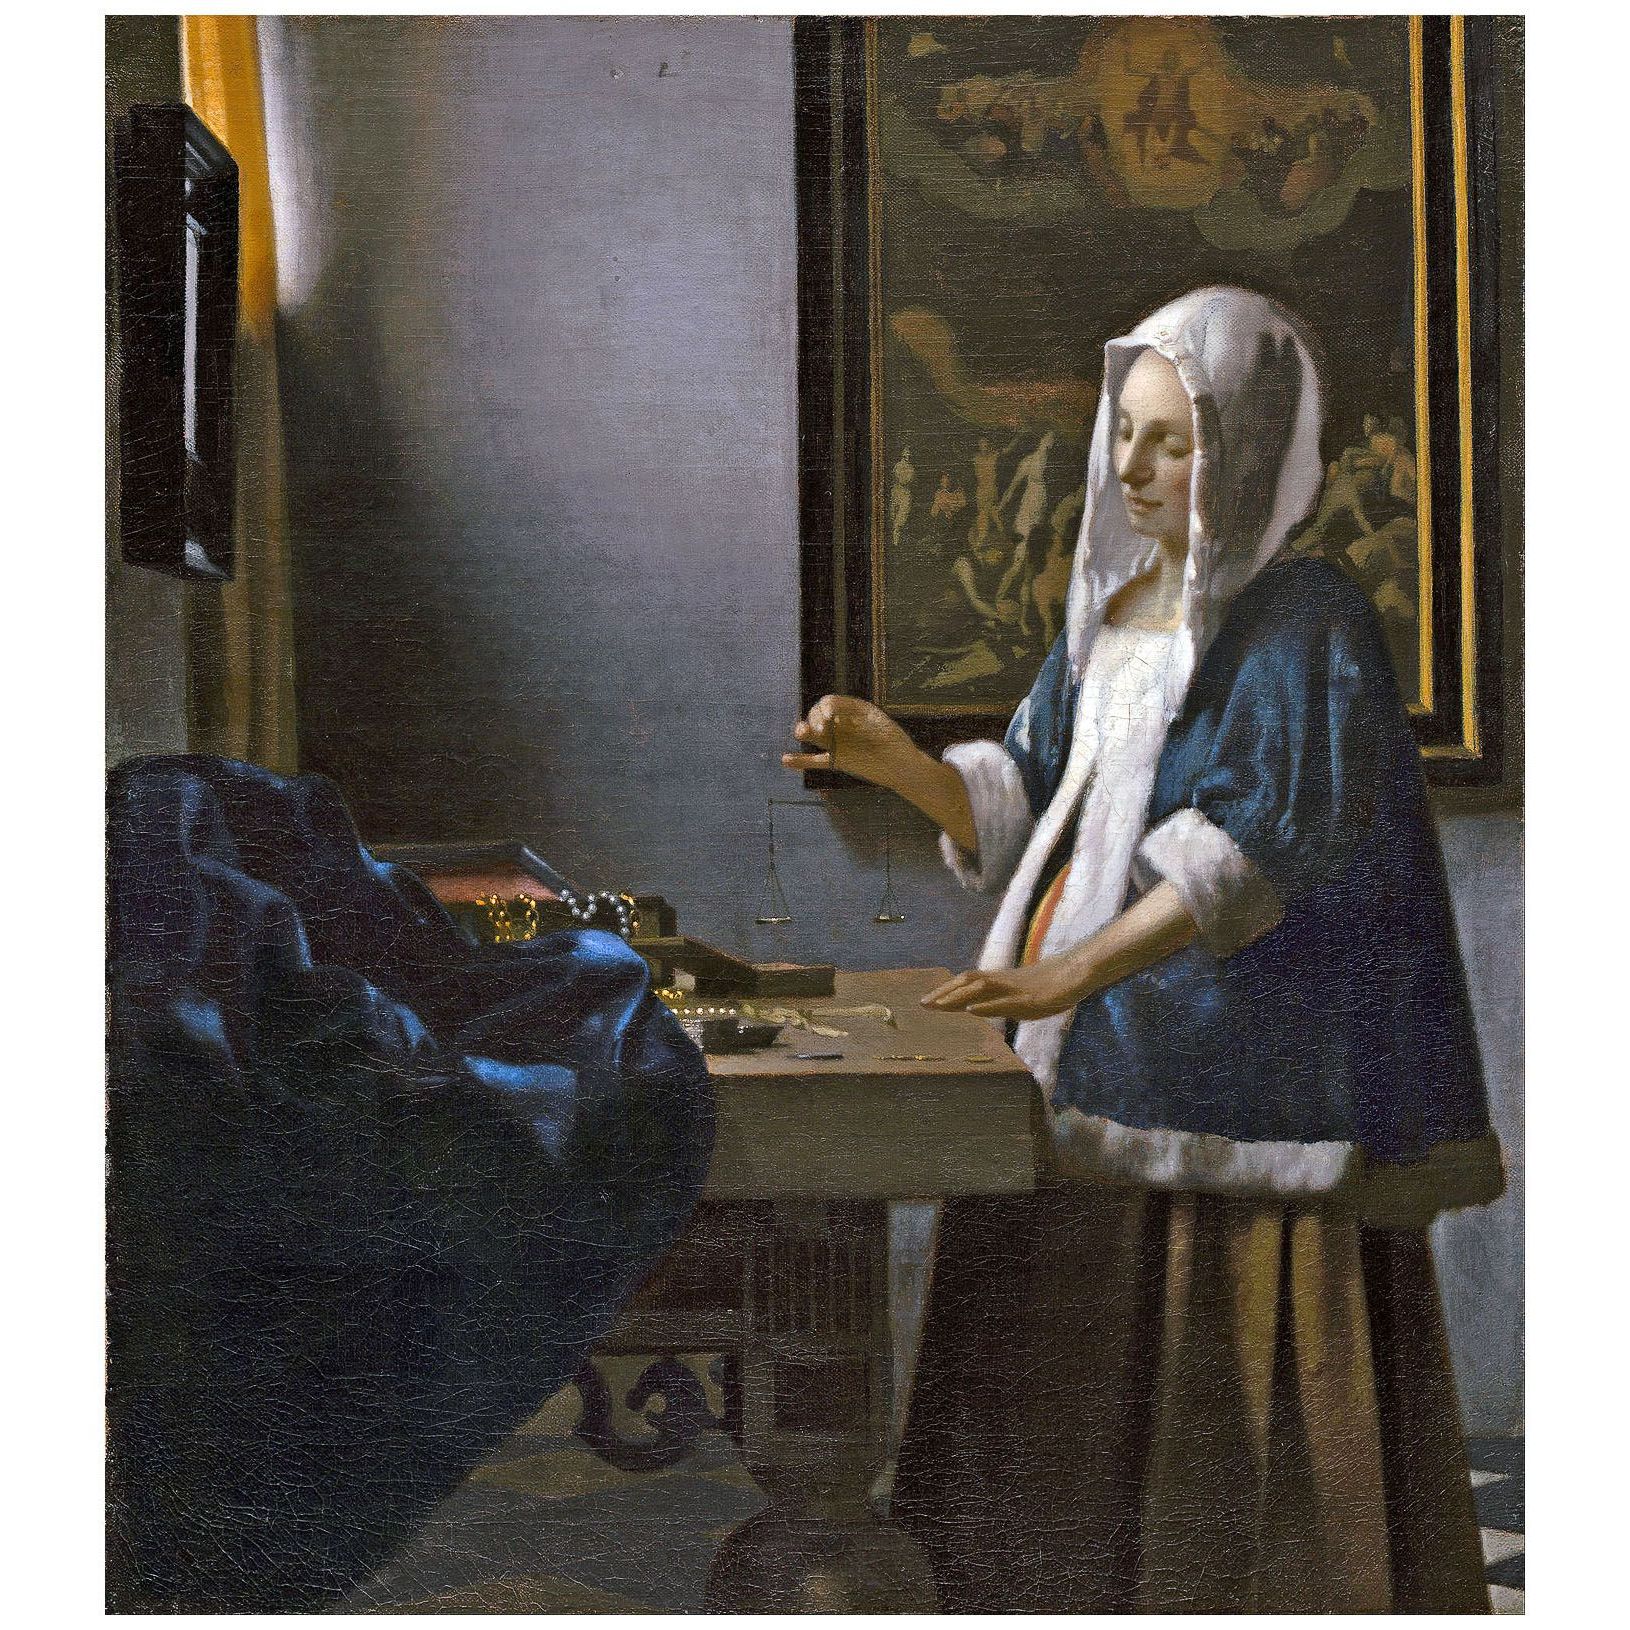 Pieter de Hooch. Woman Holding a Balance. 1664. National Gallery Washington